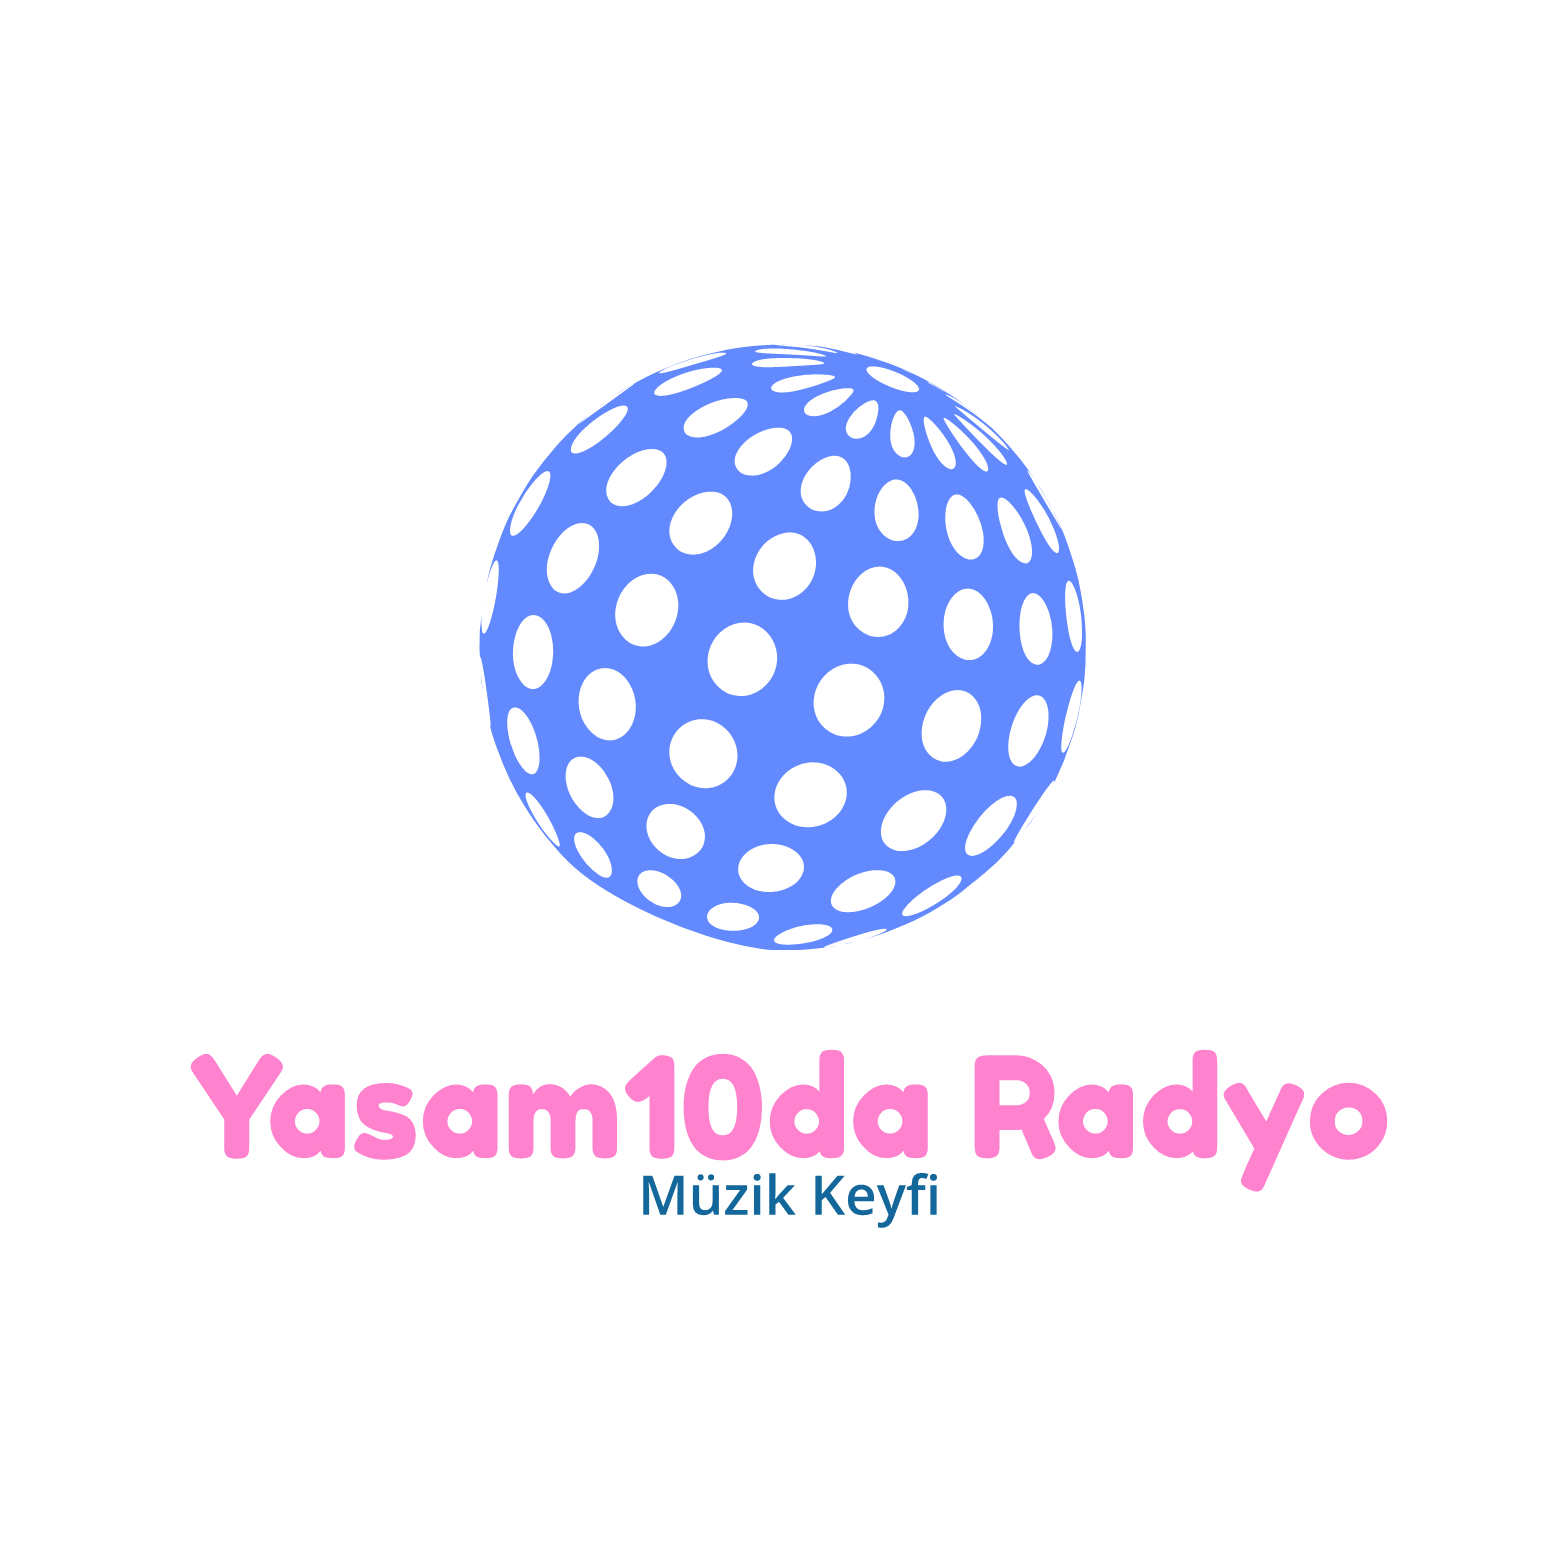 Yasam10da Radyo